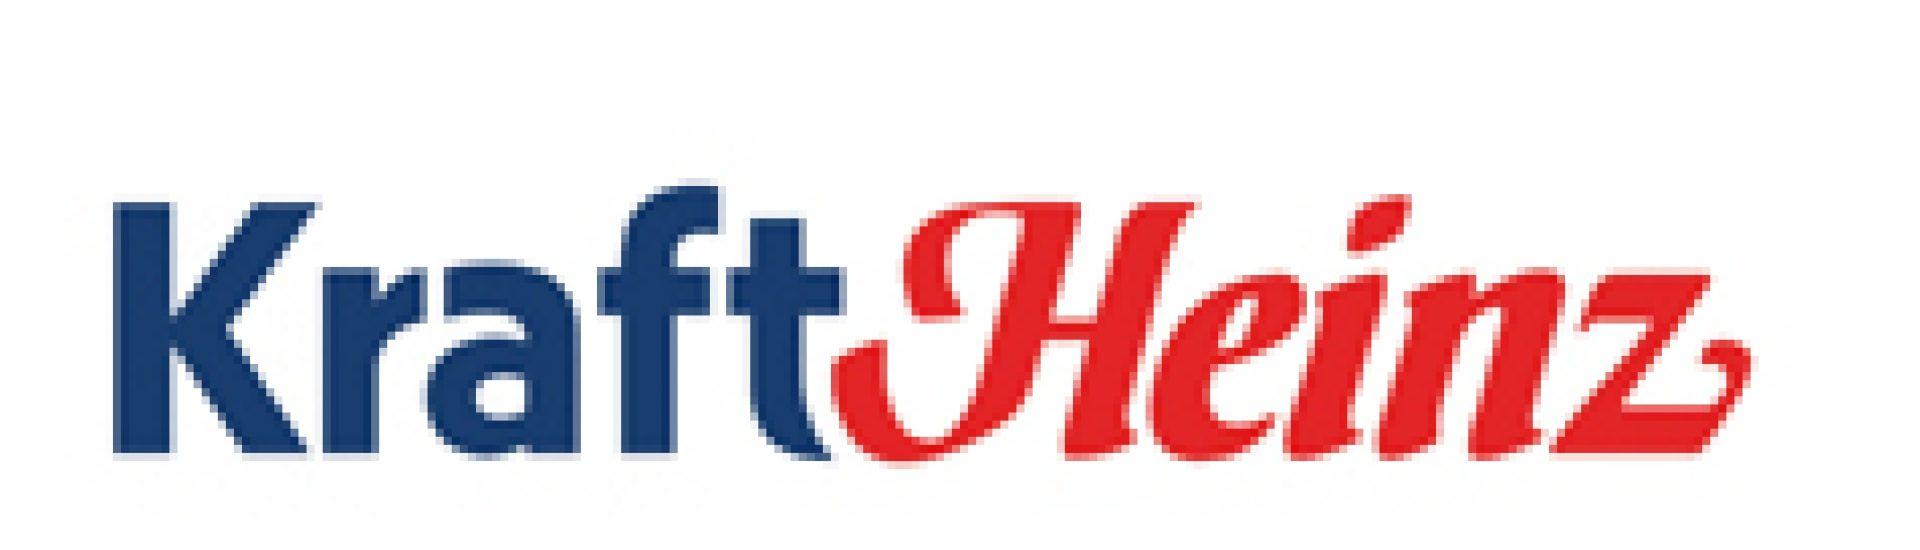 Jet-Puffed Logo - kraft heinz logo